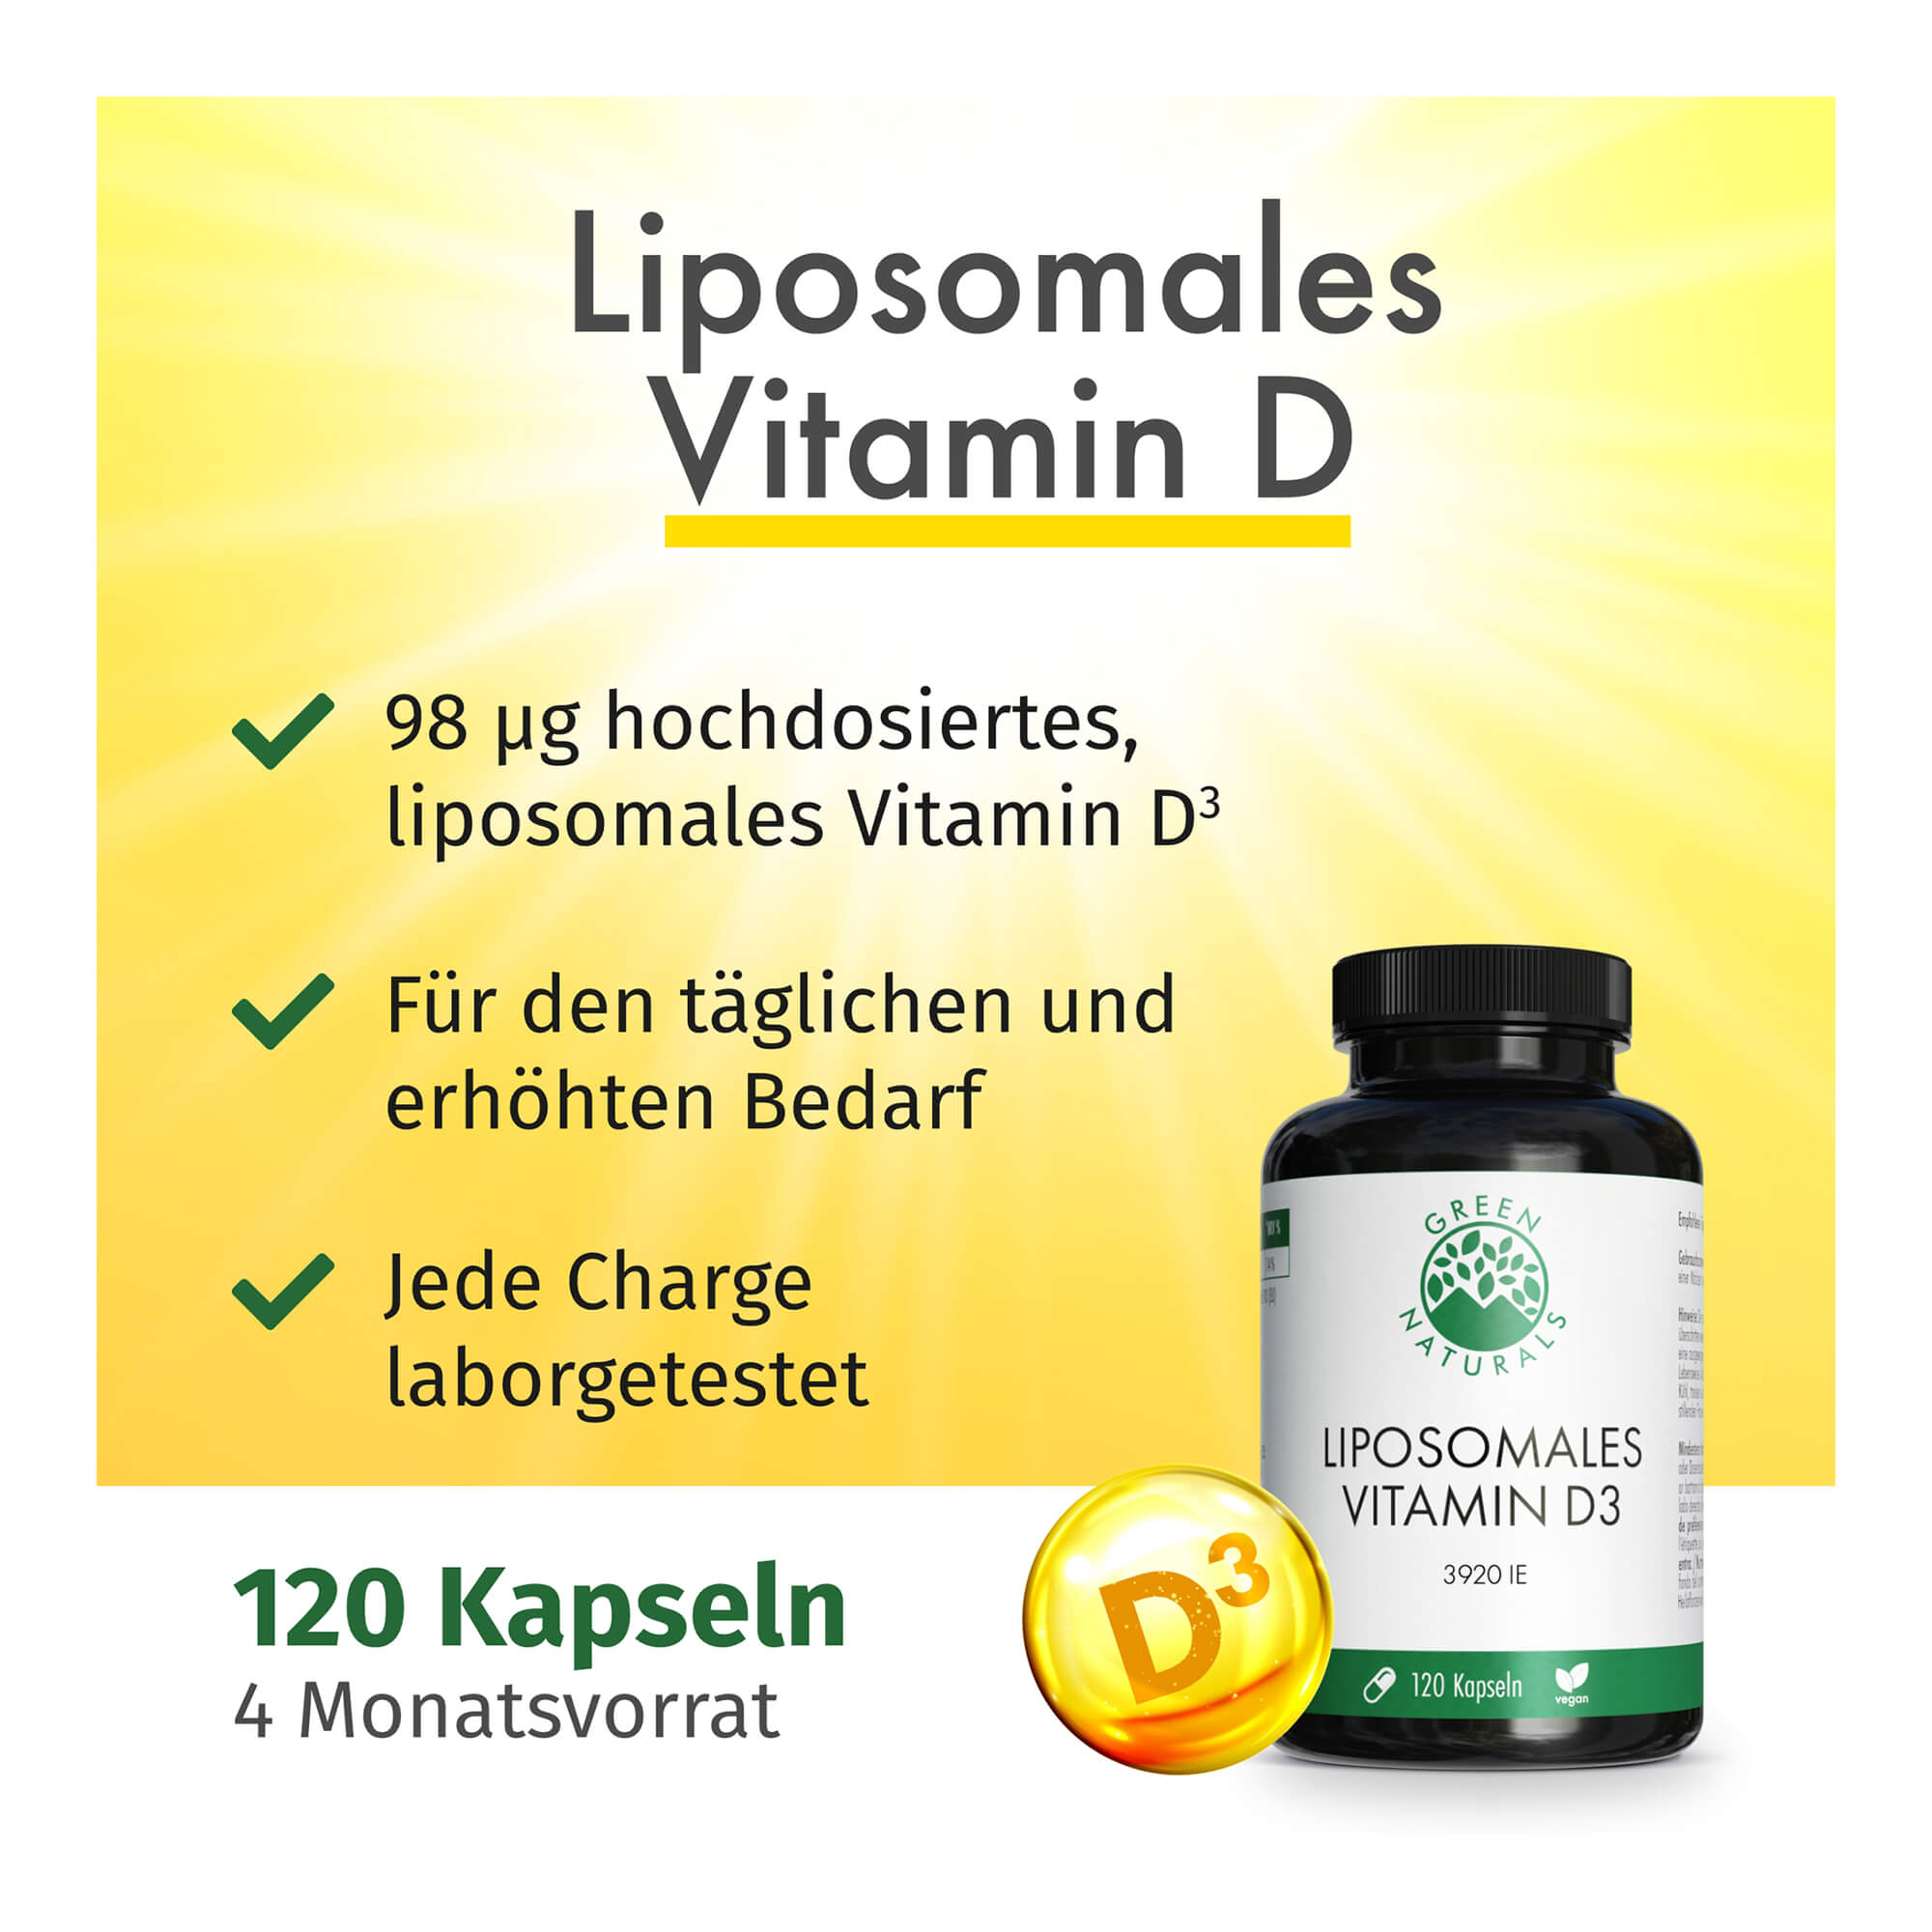 Eigenschaften von GREEN NATURALS Liposomales Vitamin D3